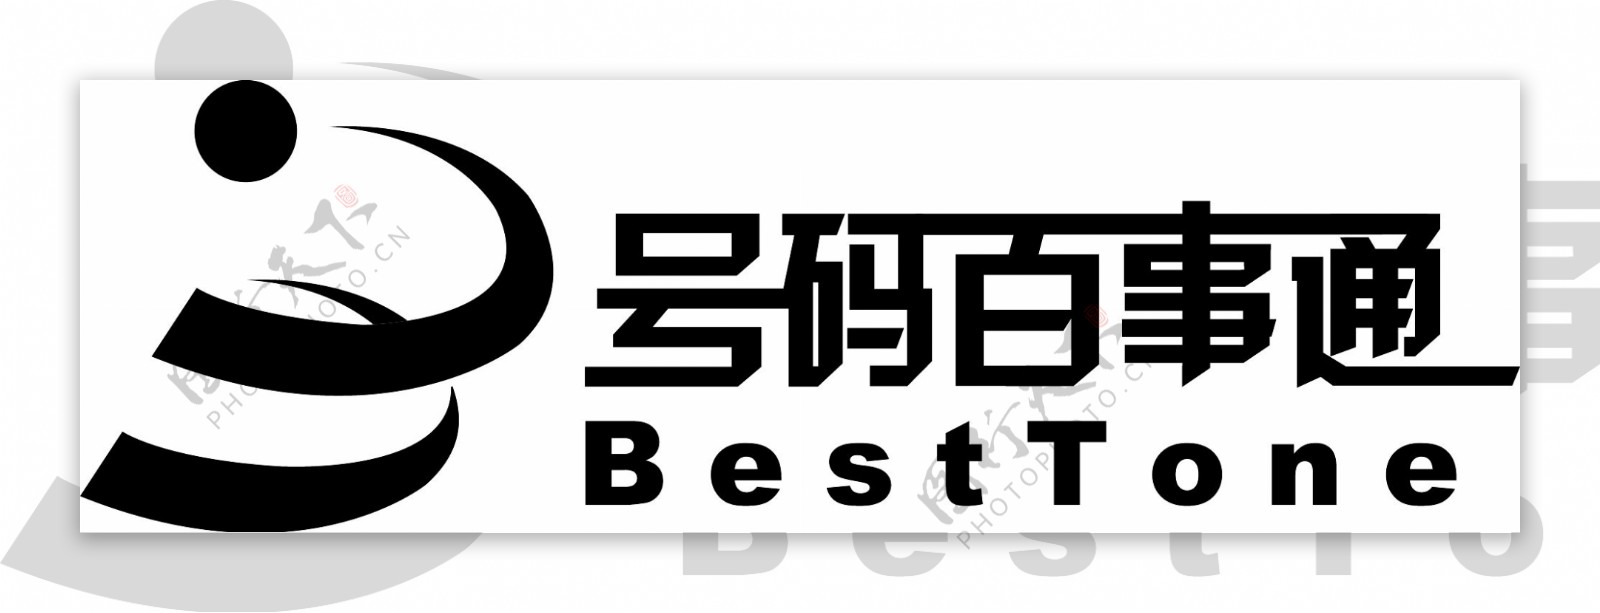 号码百事通logo图片